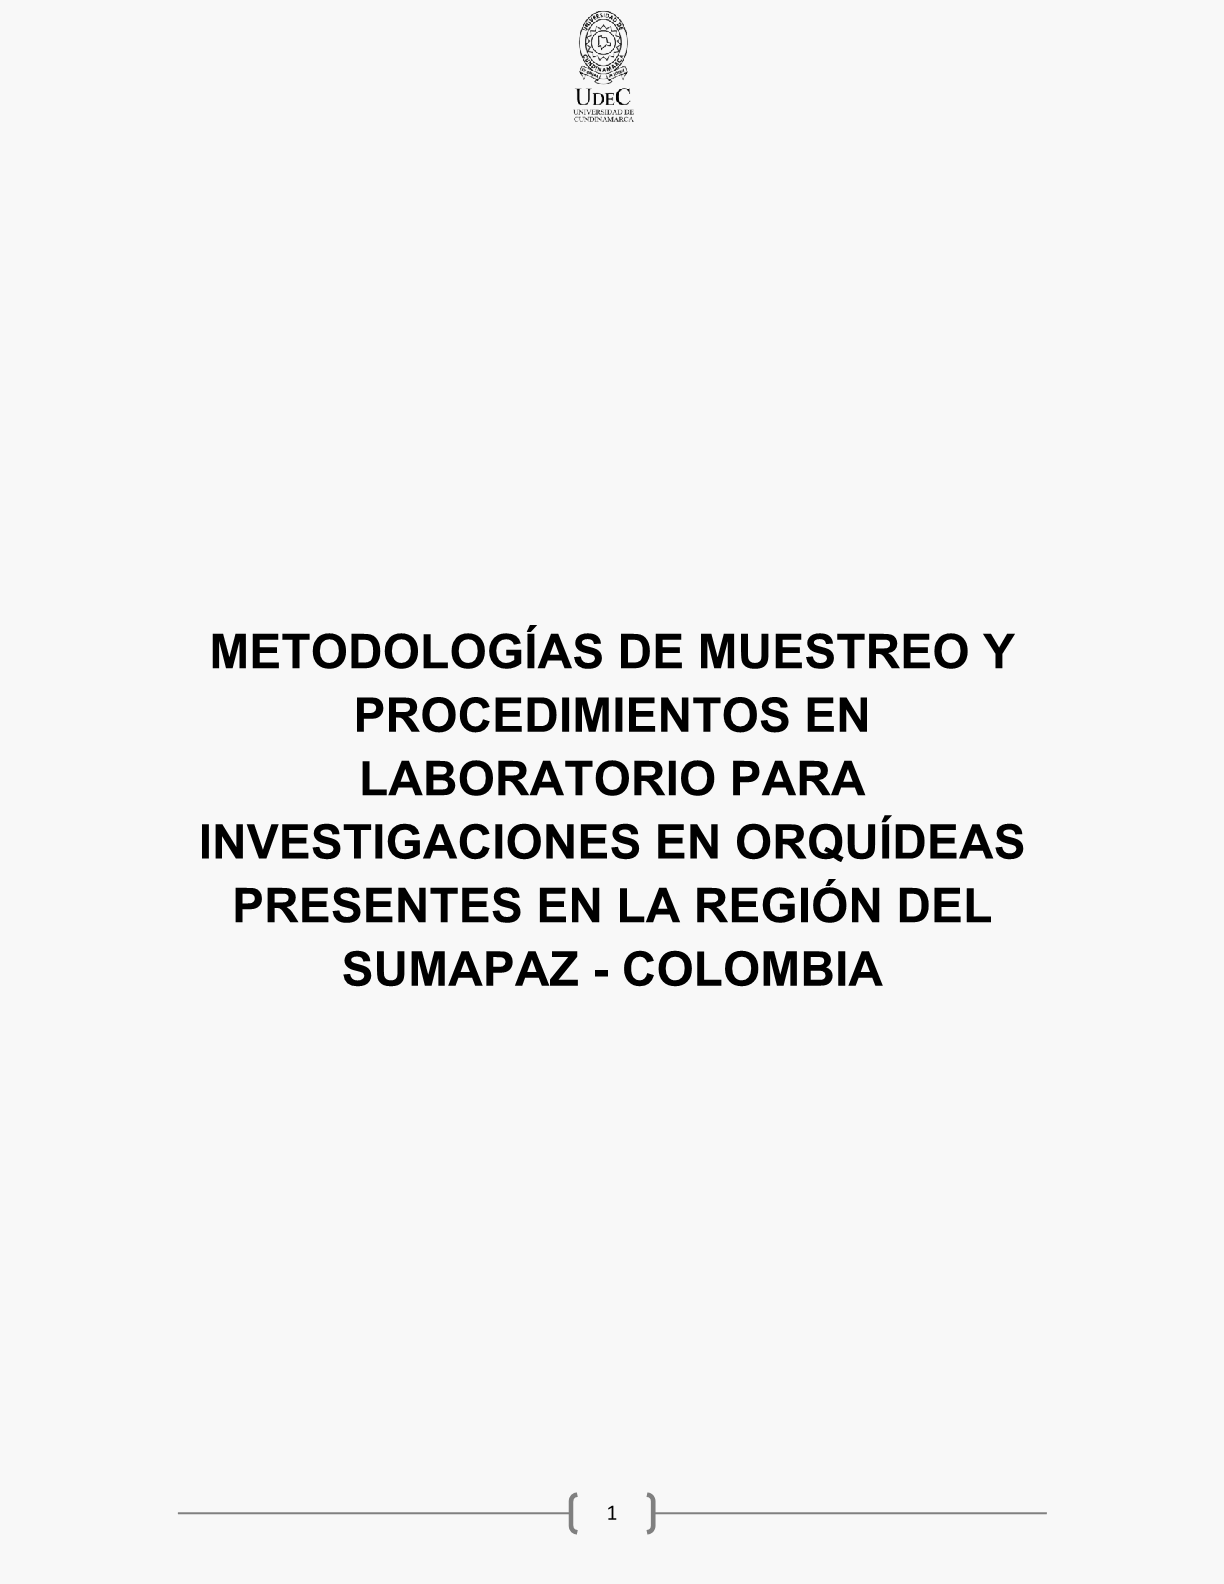 Metodologías de muestreo y procedimientos en laboratorio para investigaciones en orquídeas presentes en la región del Sumapaz – Colombia